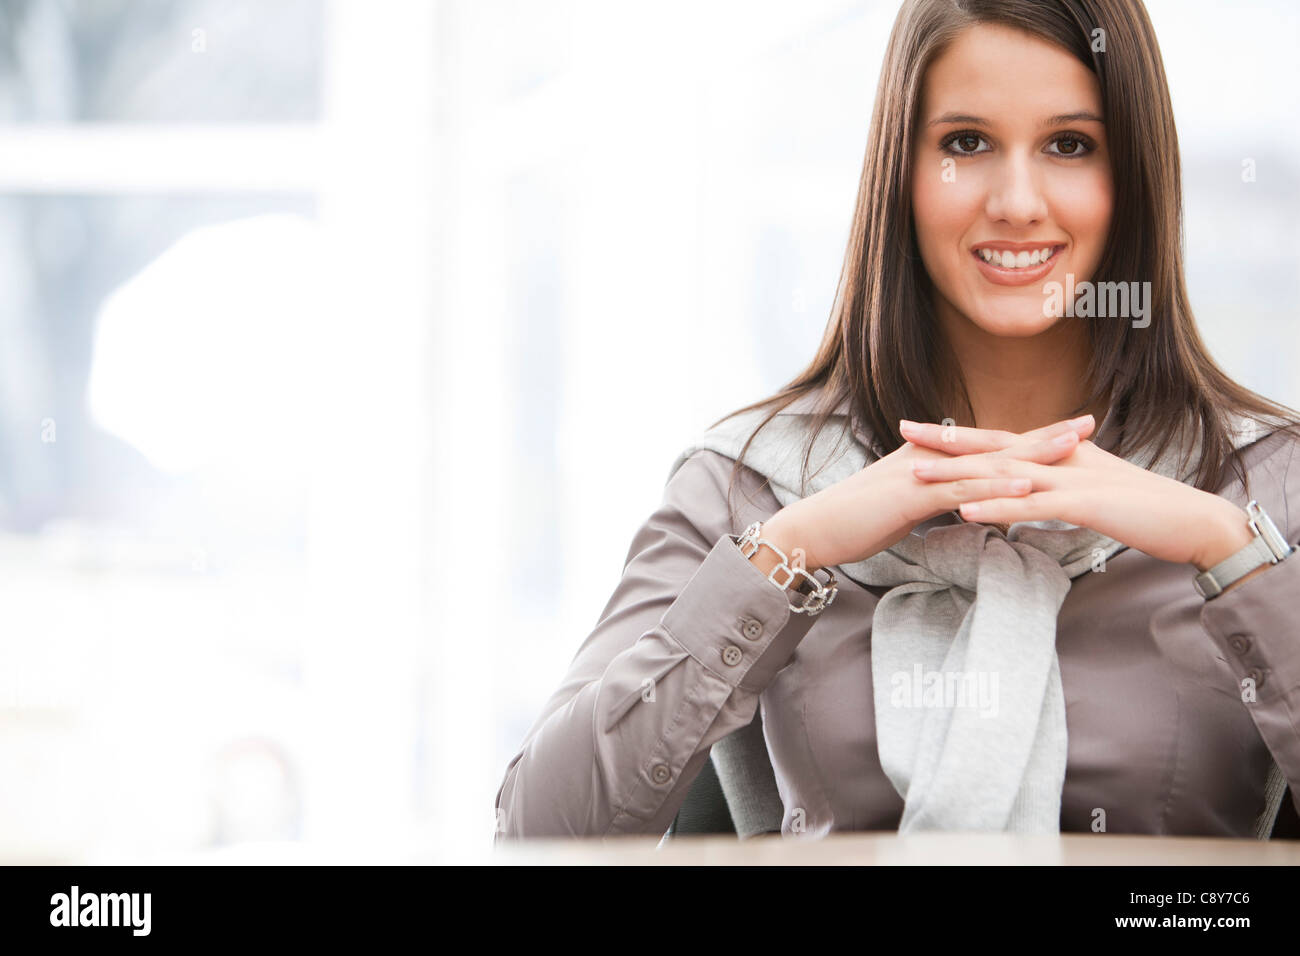 Portrait of young businesswoman Banque D'Images